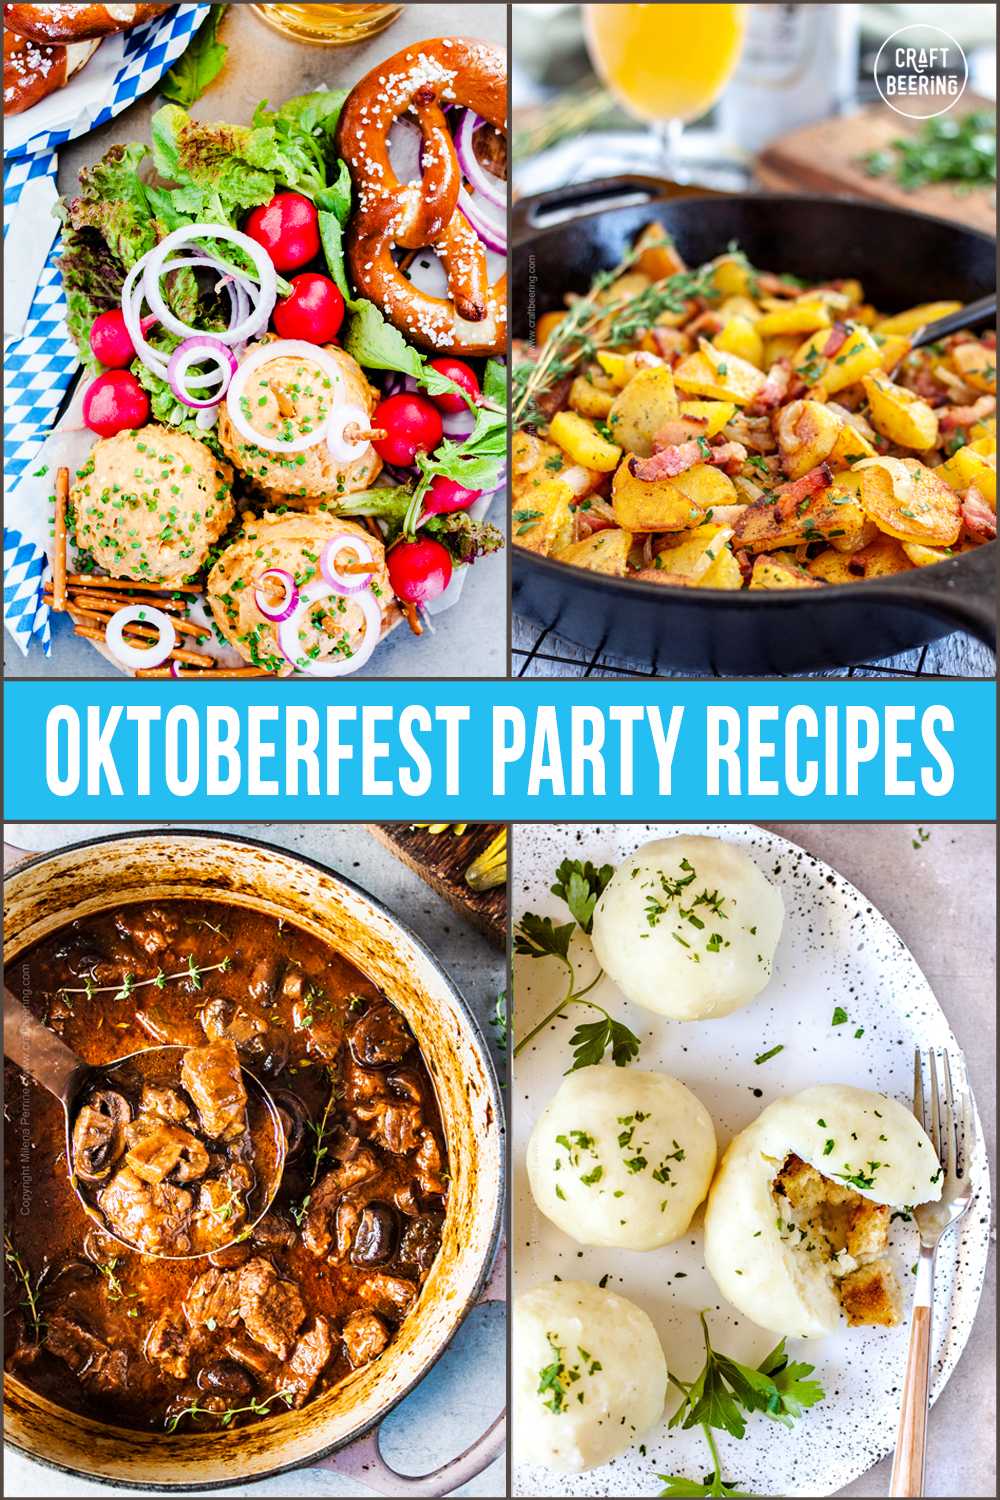 Oktoberfest Food Recipes